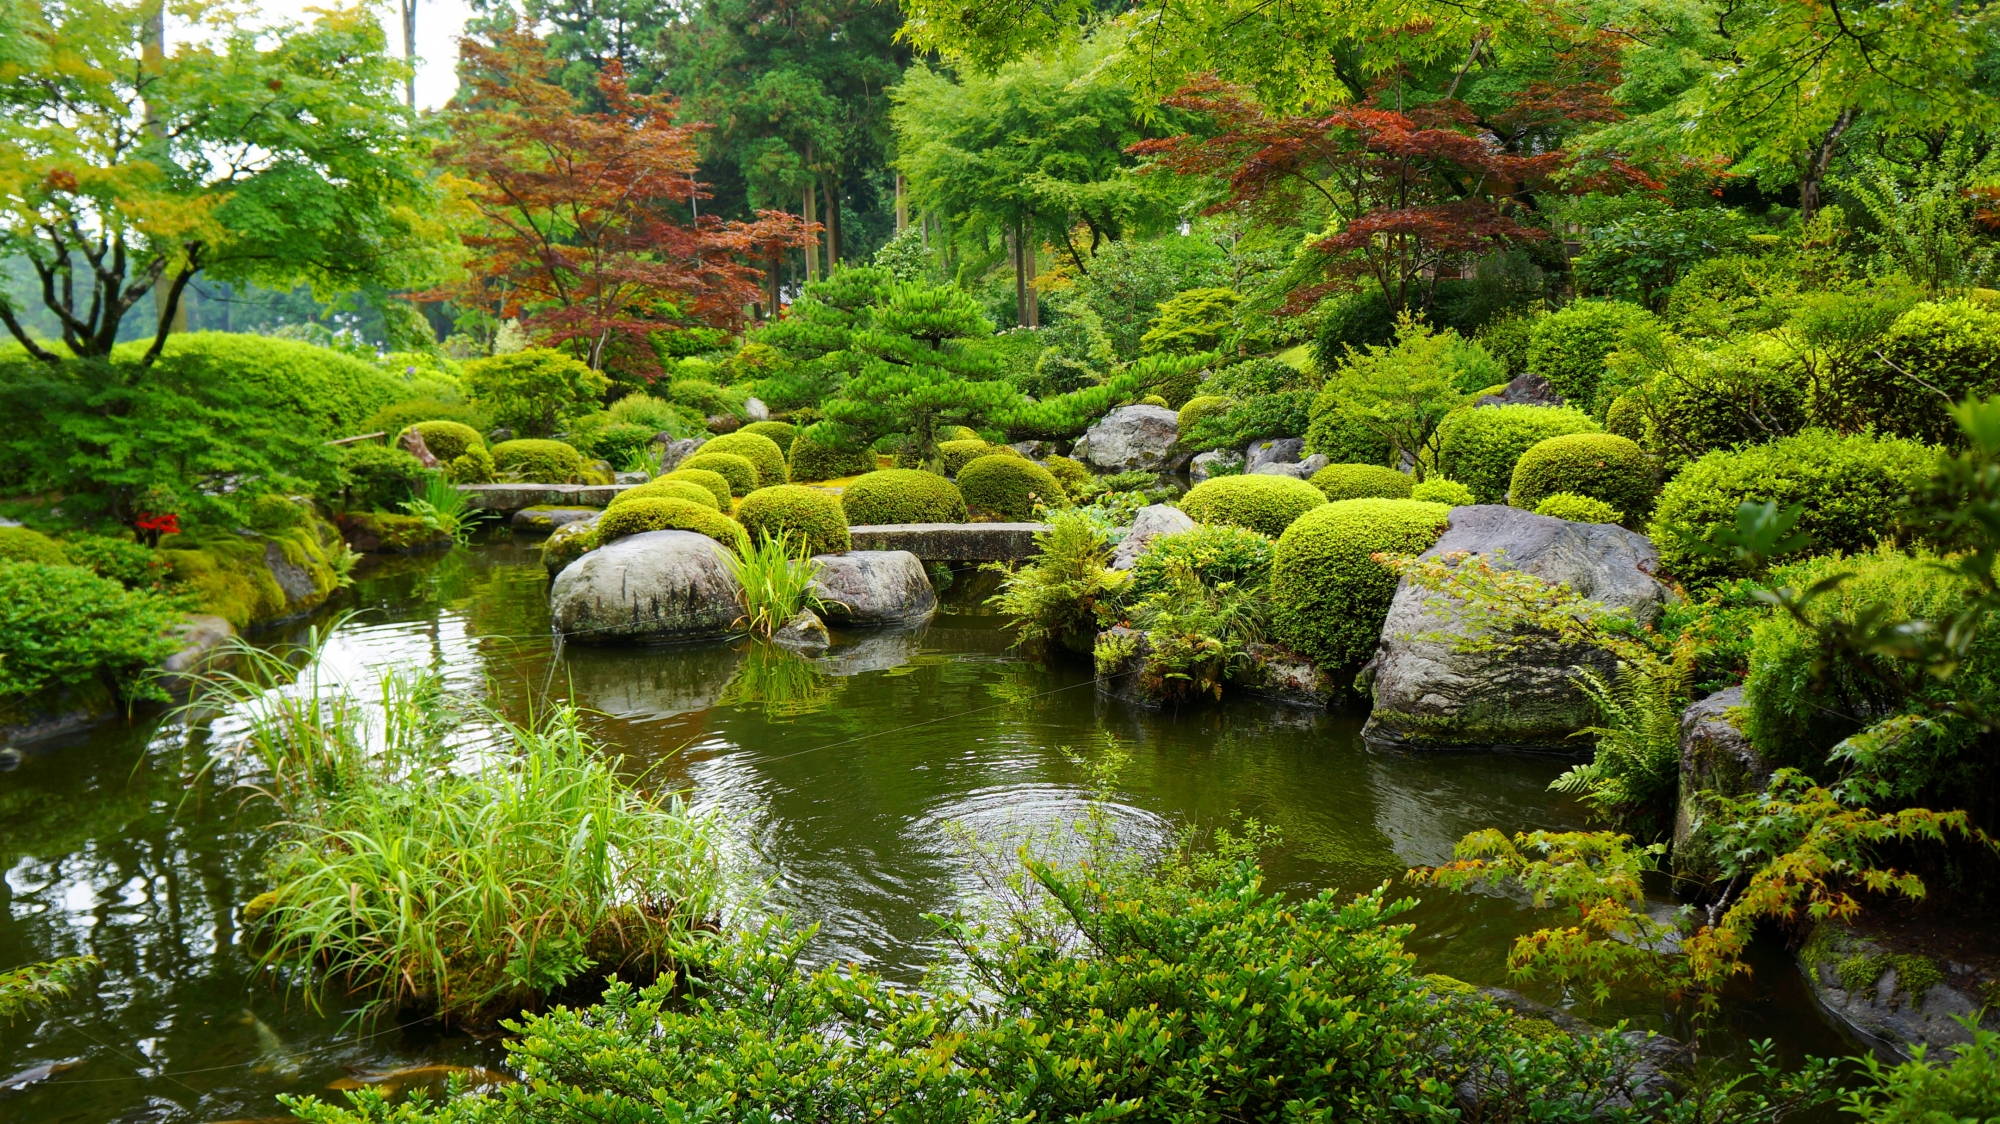 三室戸寺の自然につつまれた池泉回遊式庭園